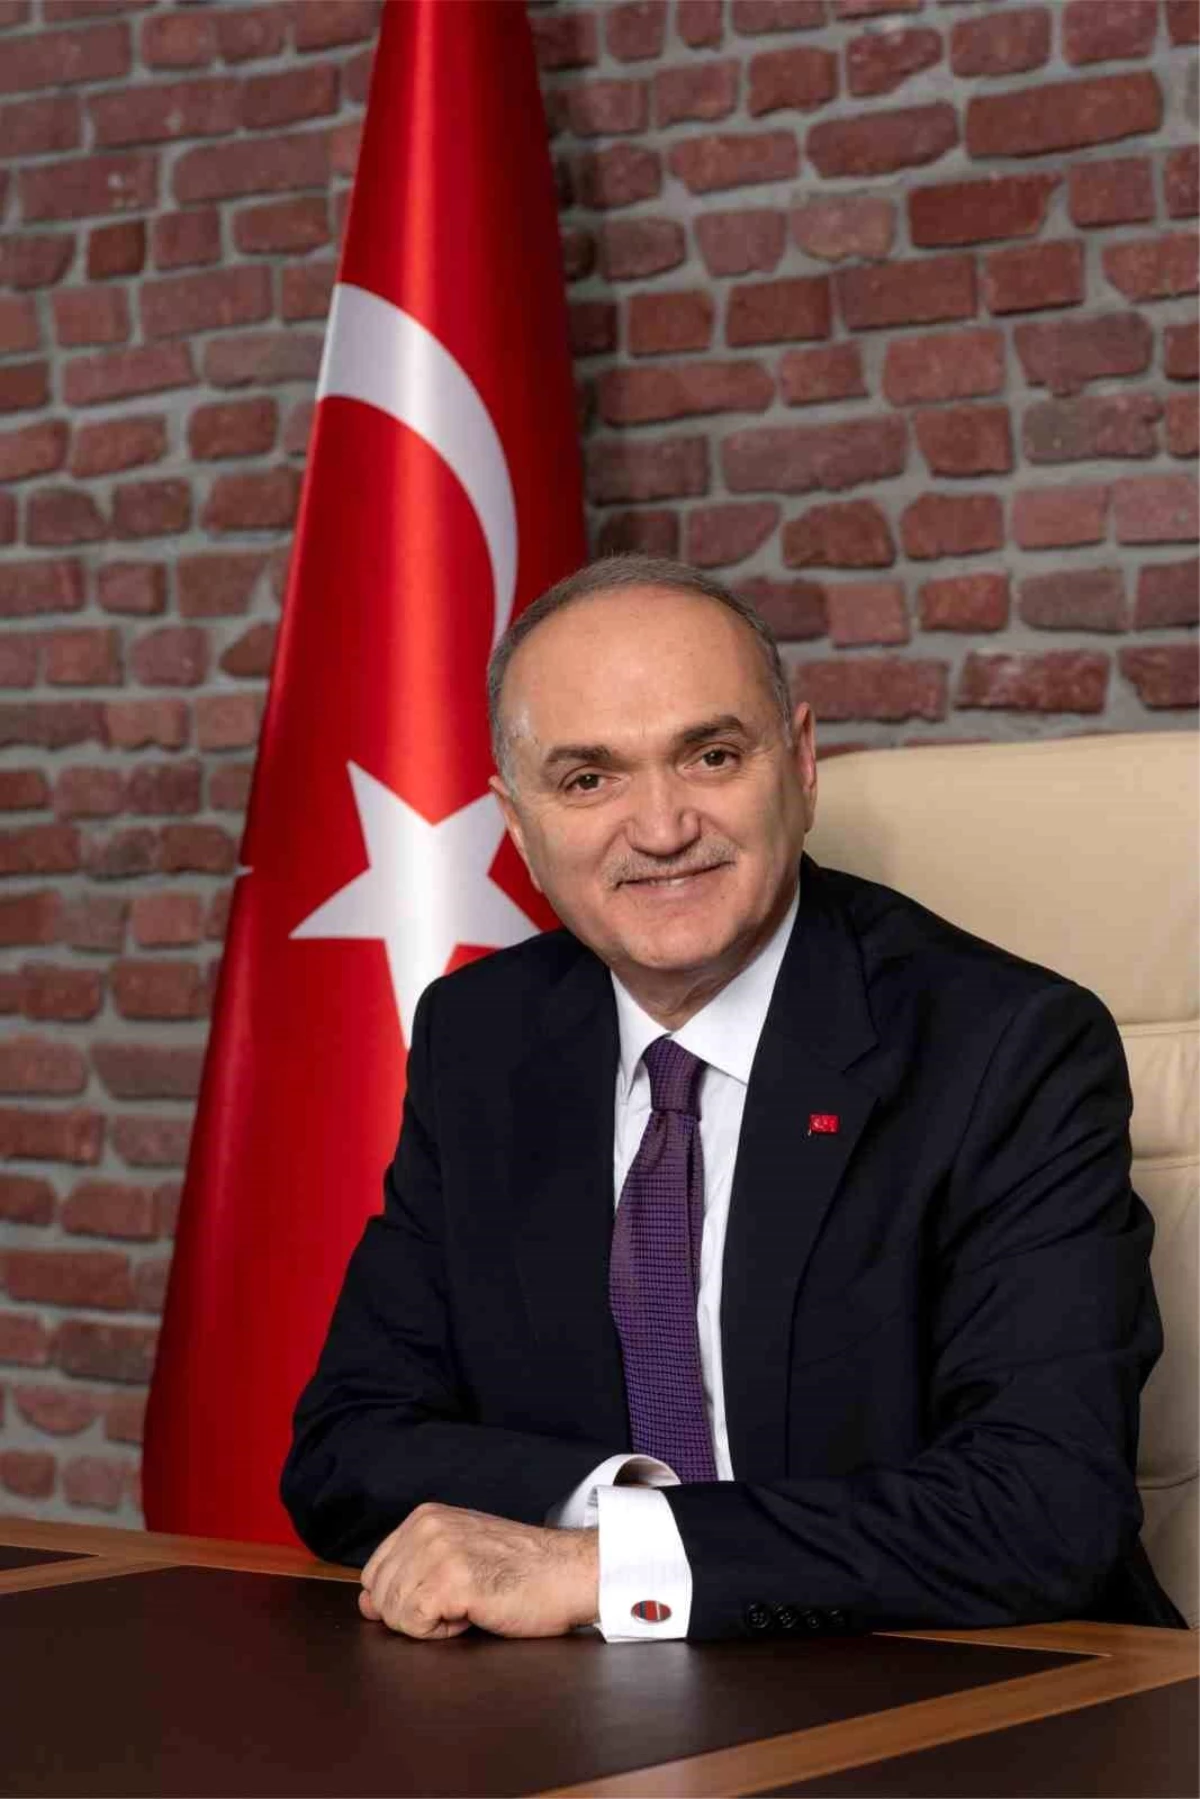 Düzce Belediye Başkanı Dr. Faruk Özlü, yeni yılda huzur ve barış temennisinde bulundu